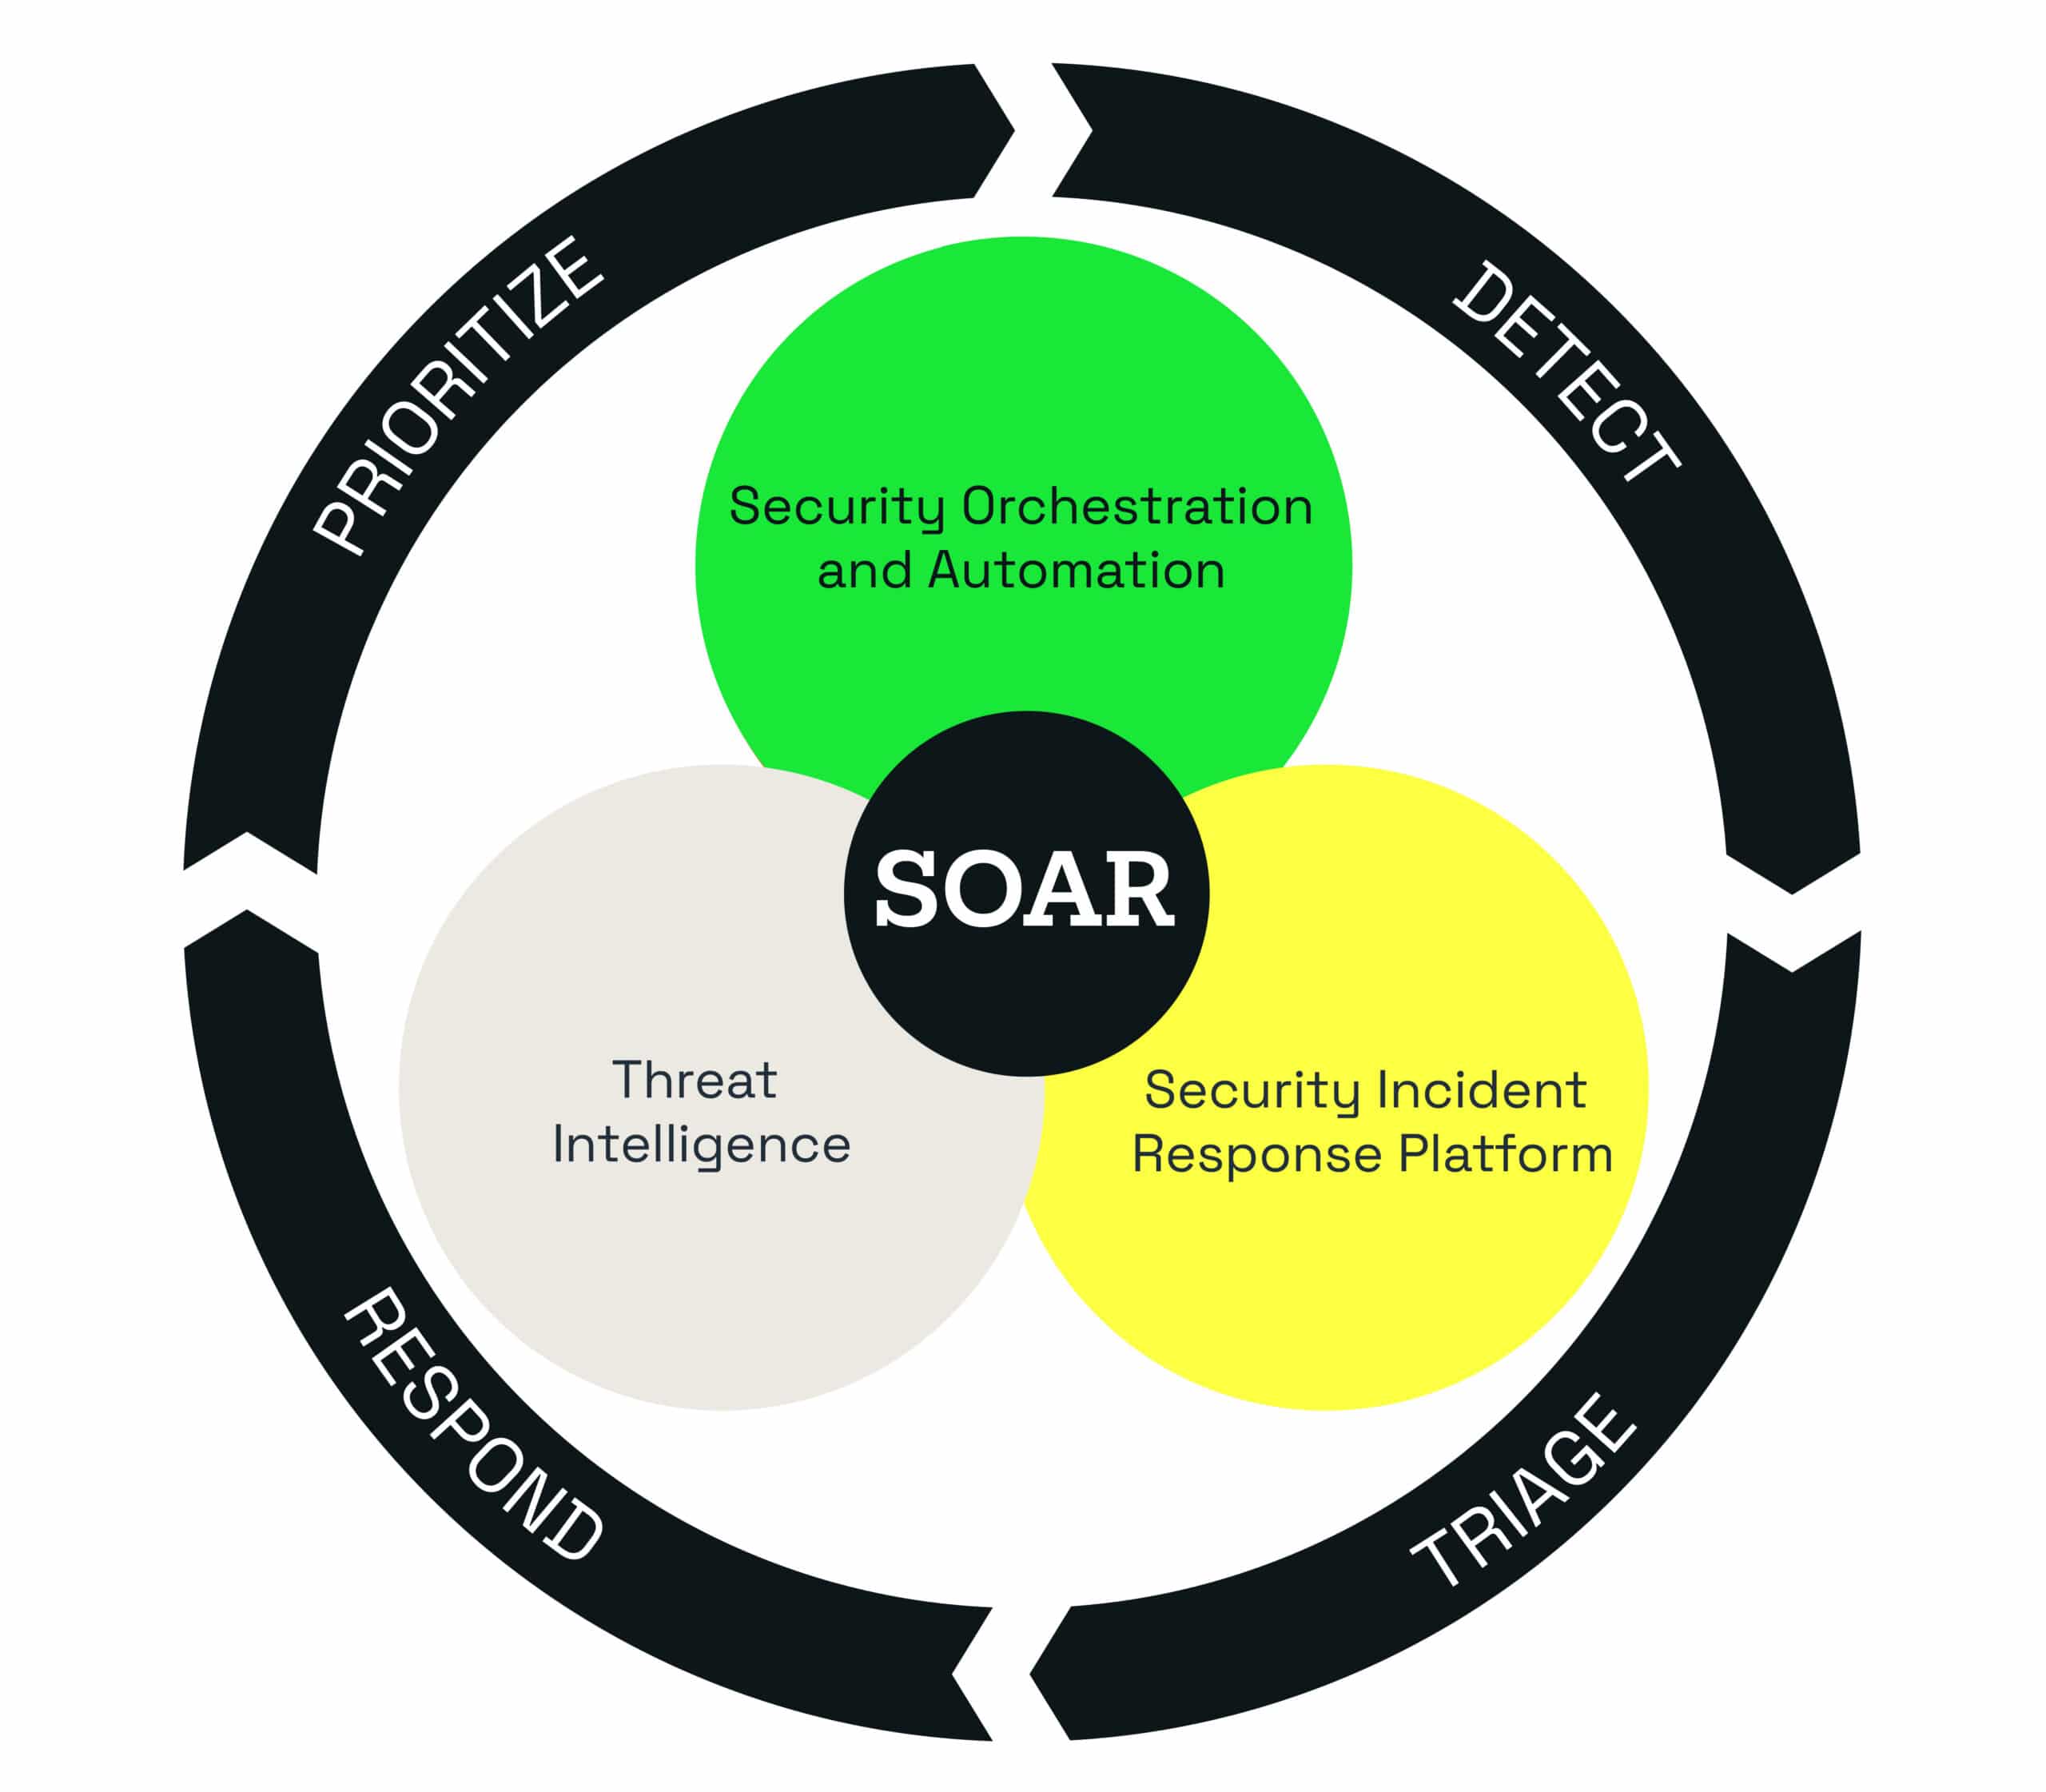 SOAR security triage process flow wheel